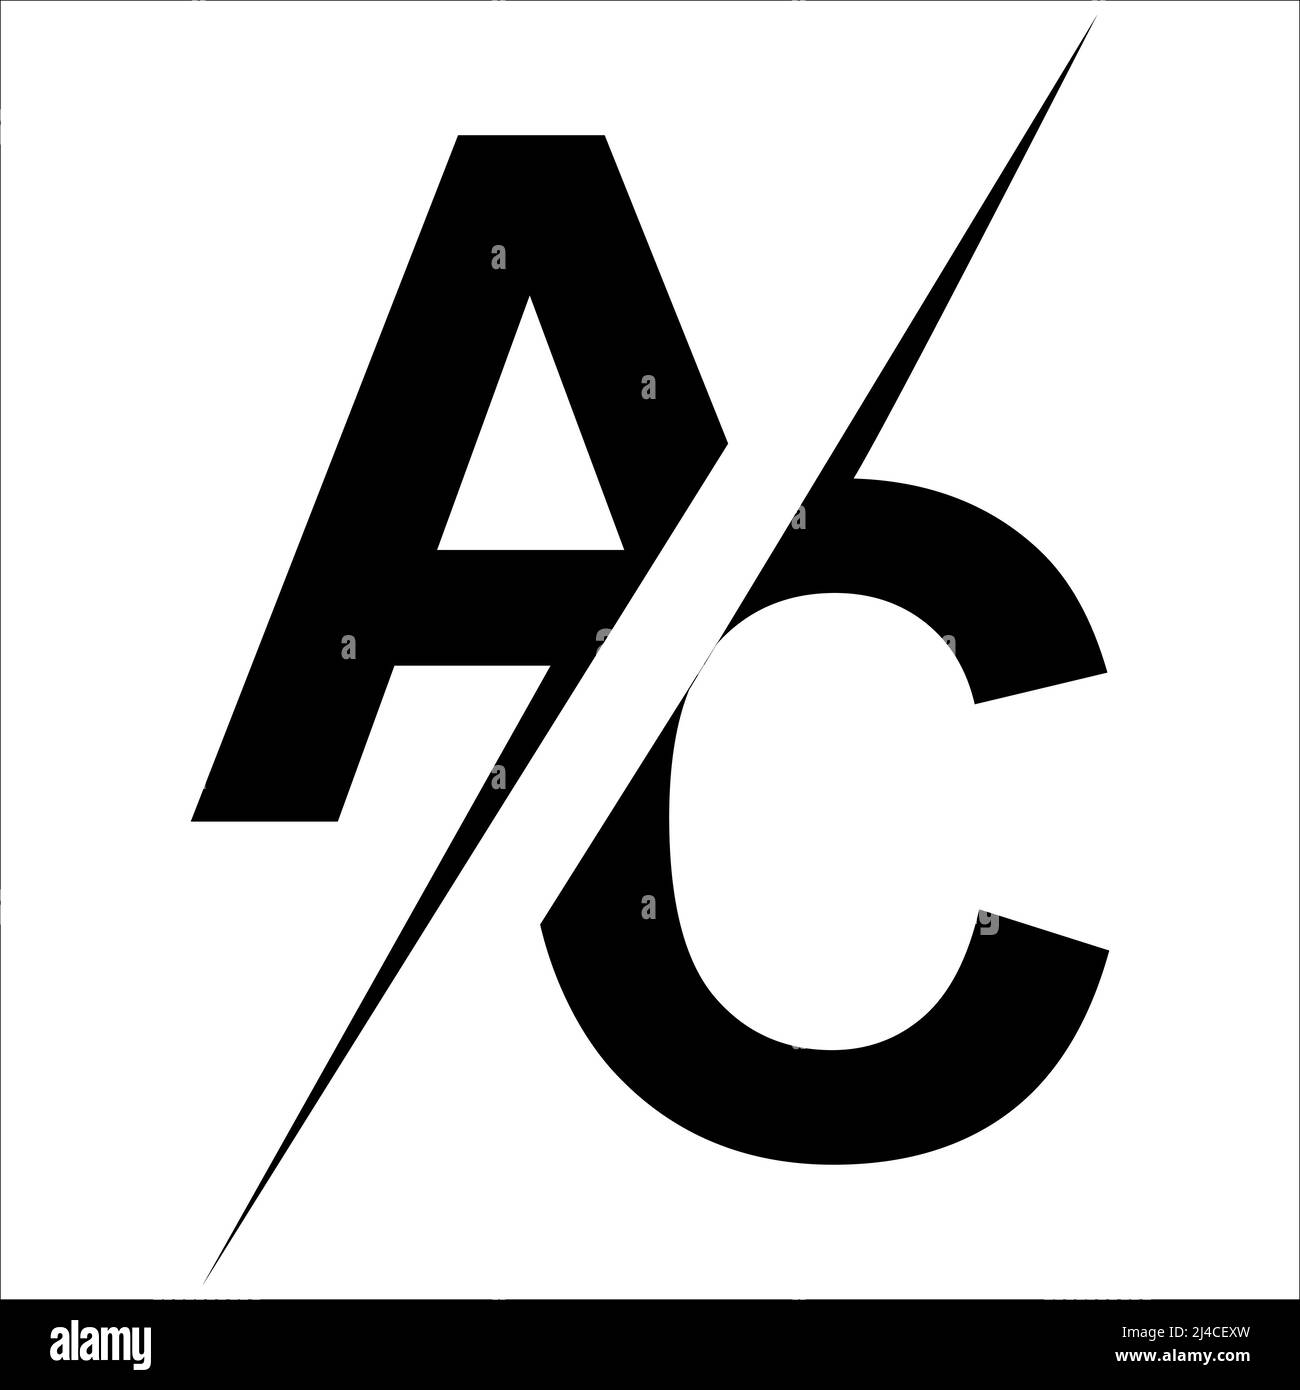 Buchstaben A C ac Logo diagonal durch Blitzschlag a gegen c ac getrennt Stock Vektor